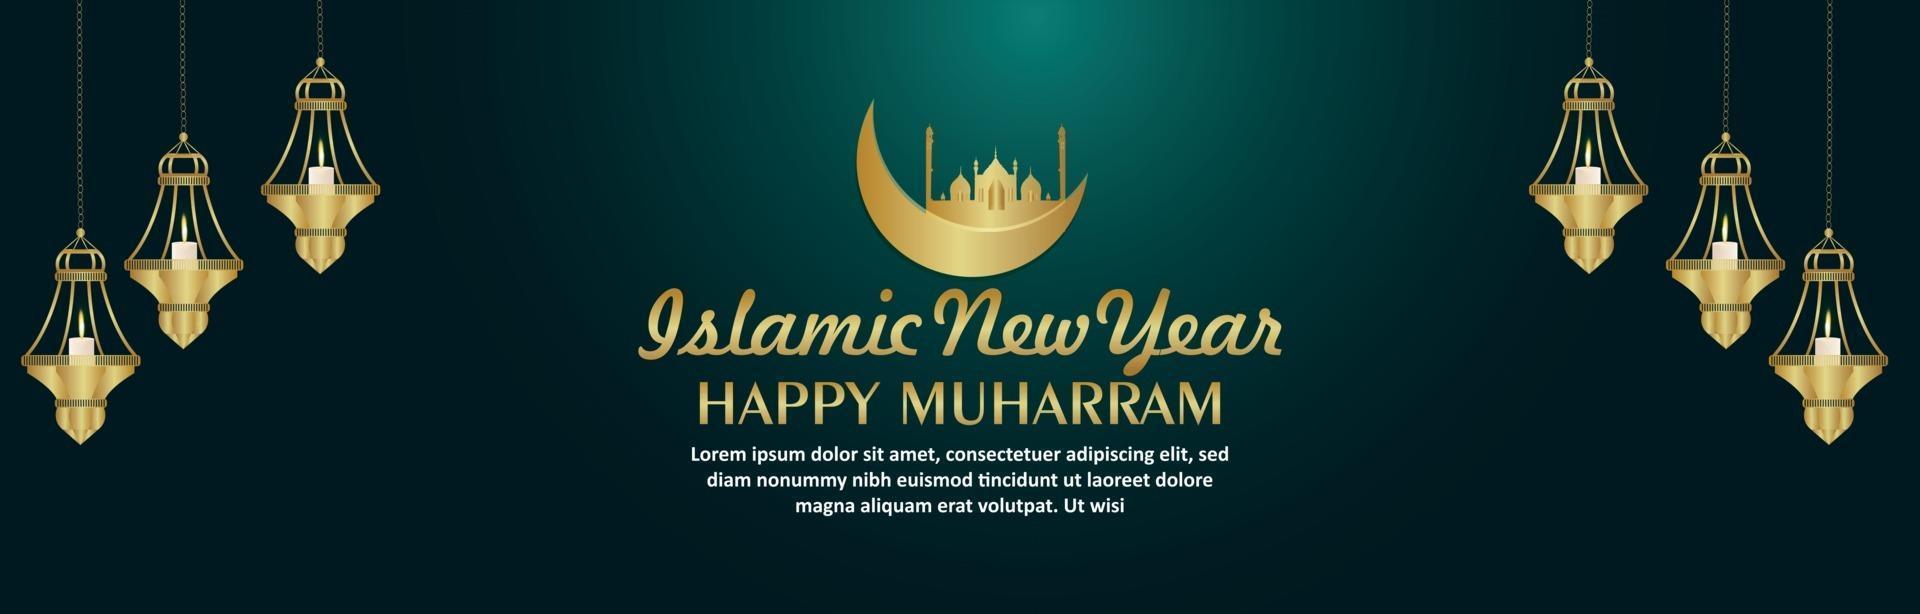 lanterna islamica di vettore creativo per banner celebrazione felice muharram